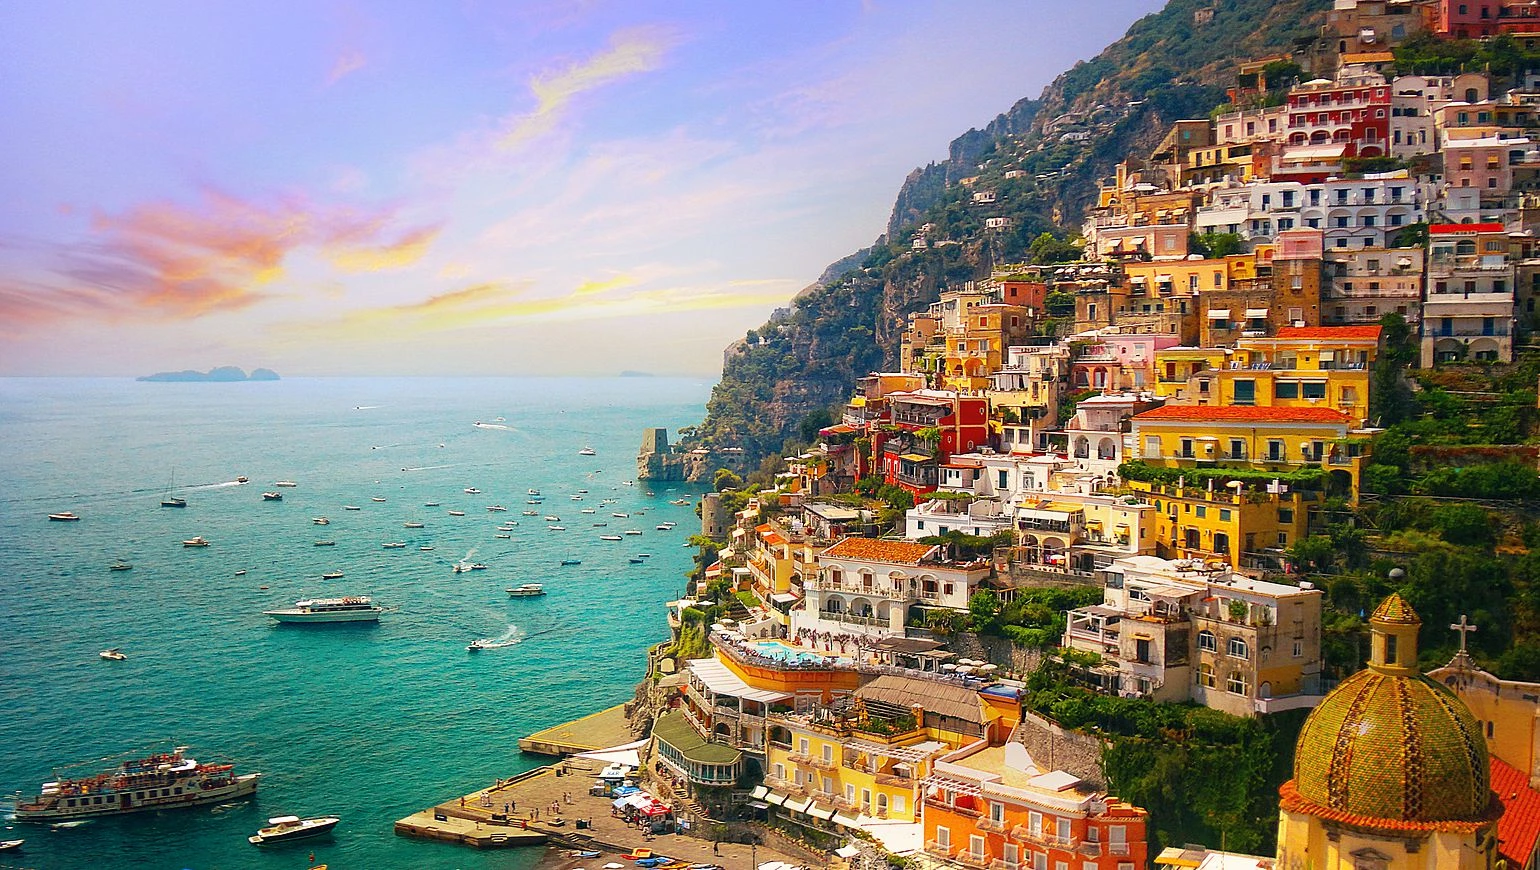 Descubre la belleza natural de la Costa Amalfitana